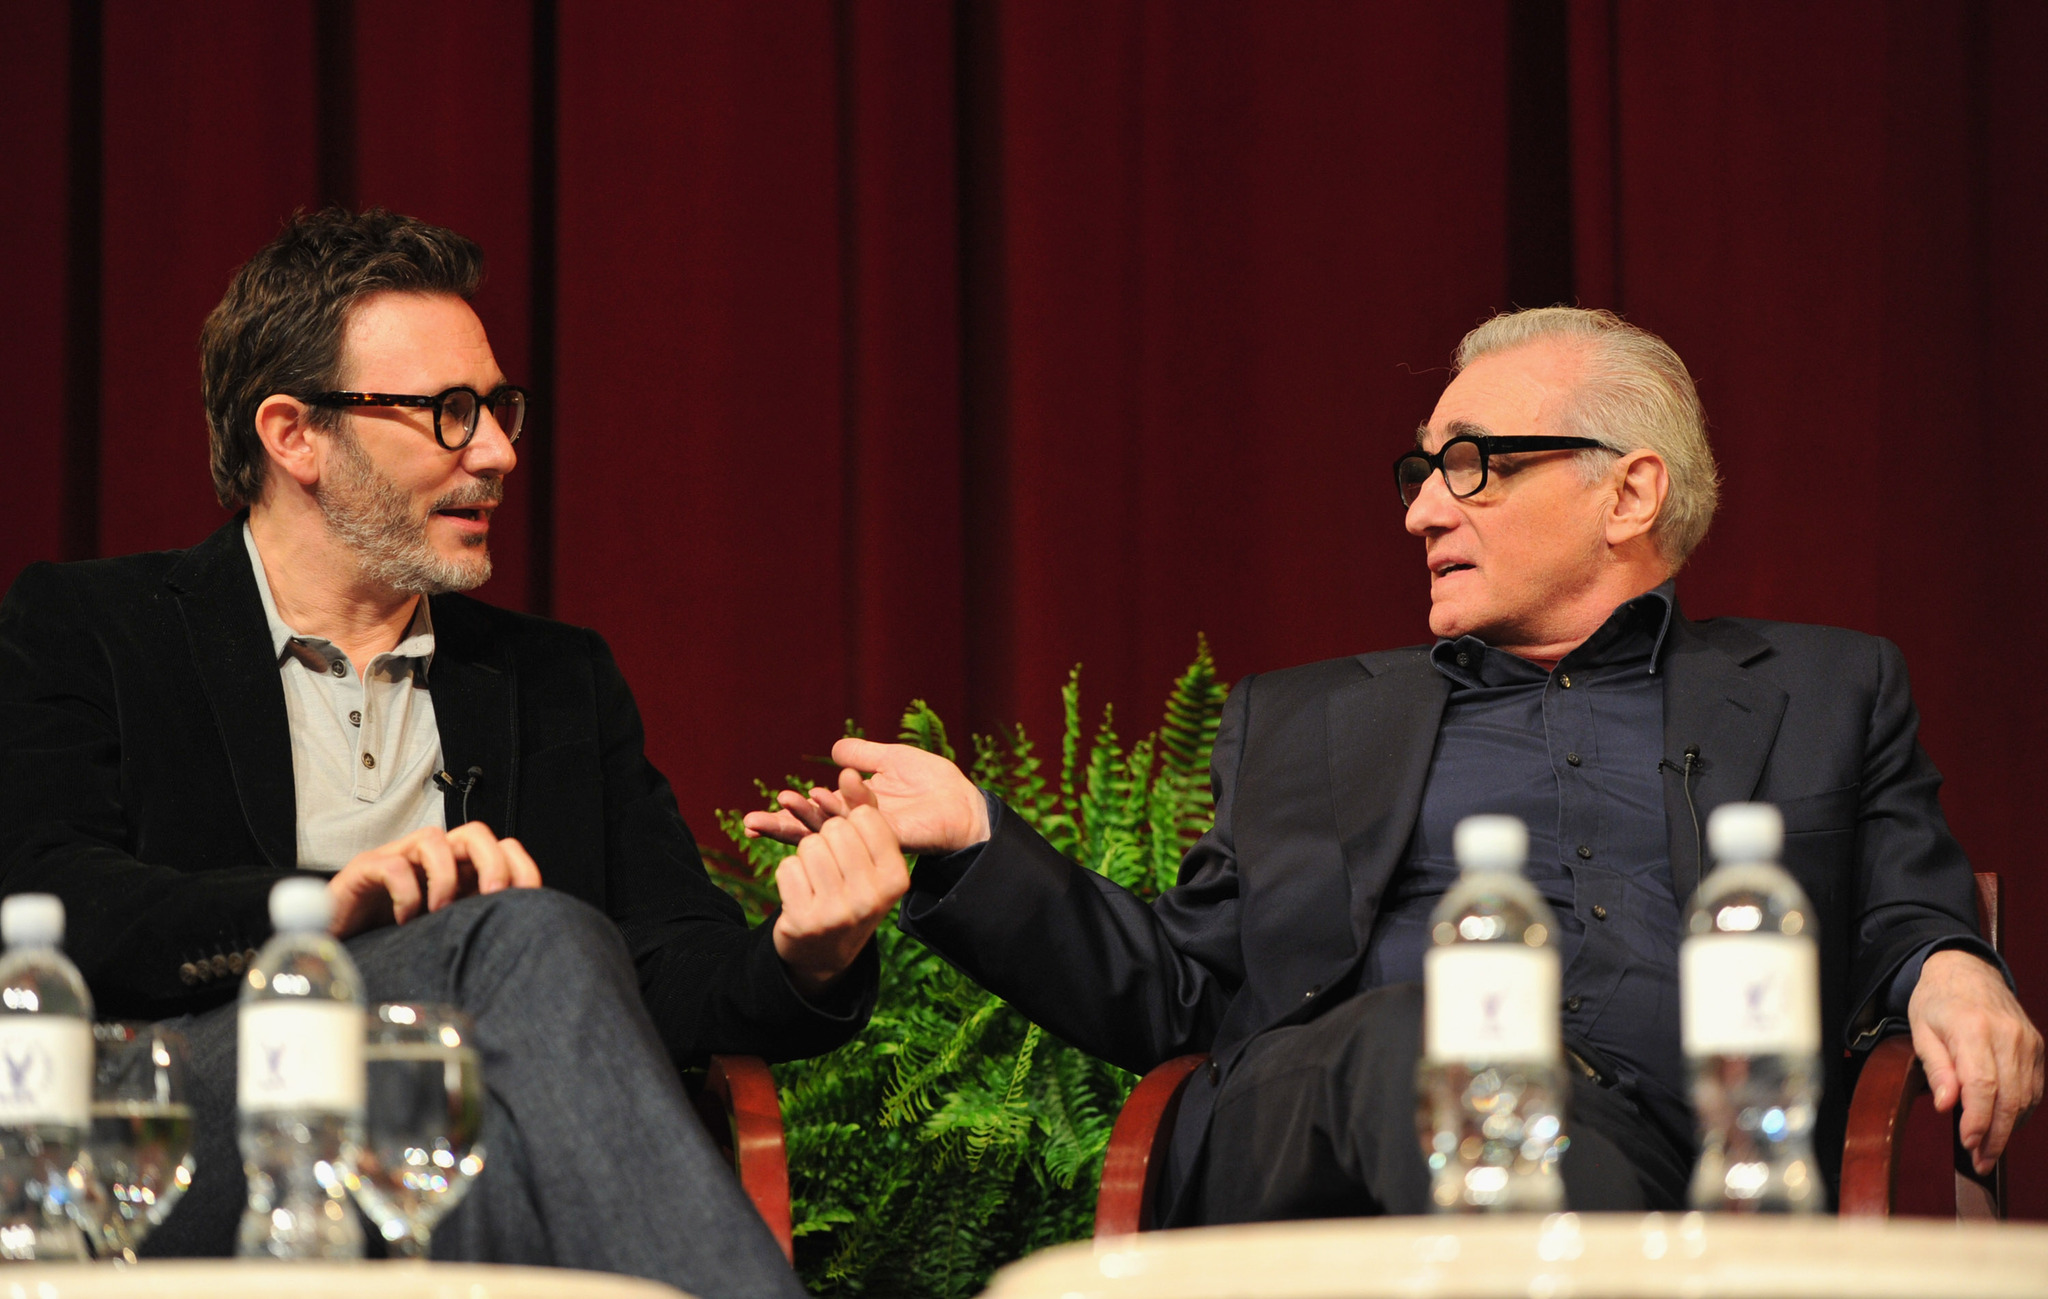 Martin Scorsese and Michel Hazanavicius